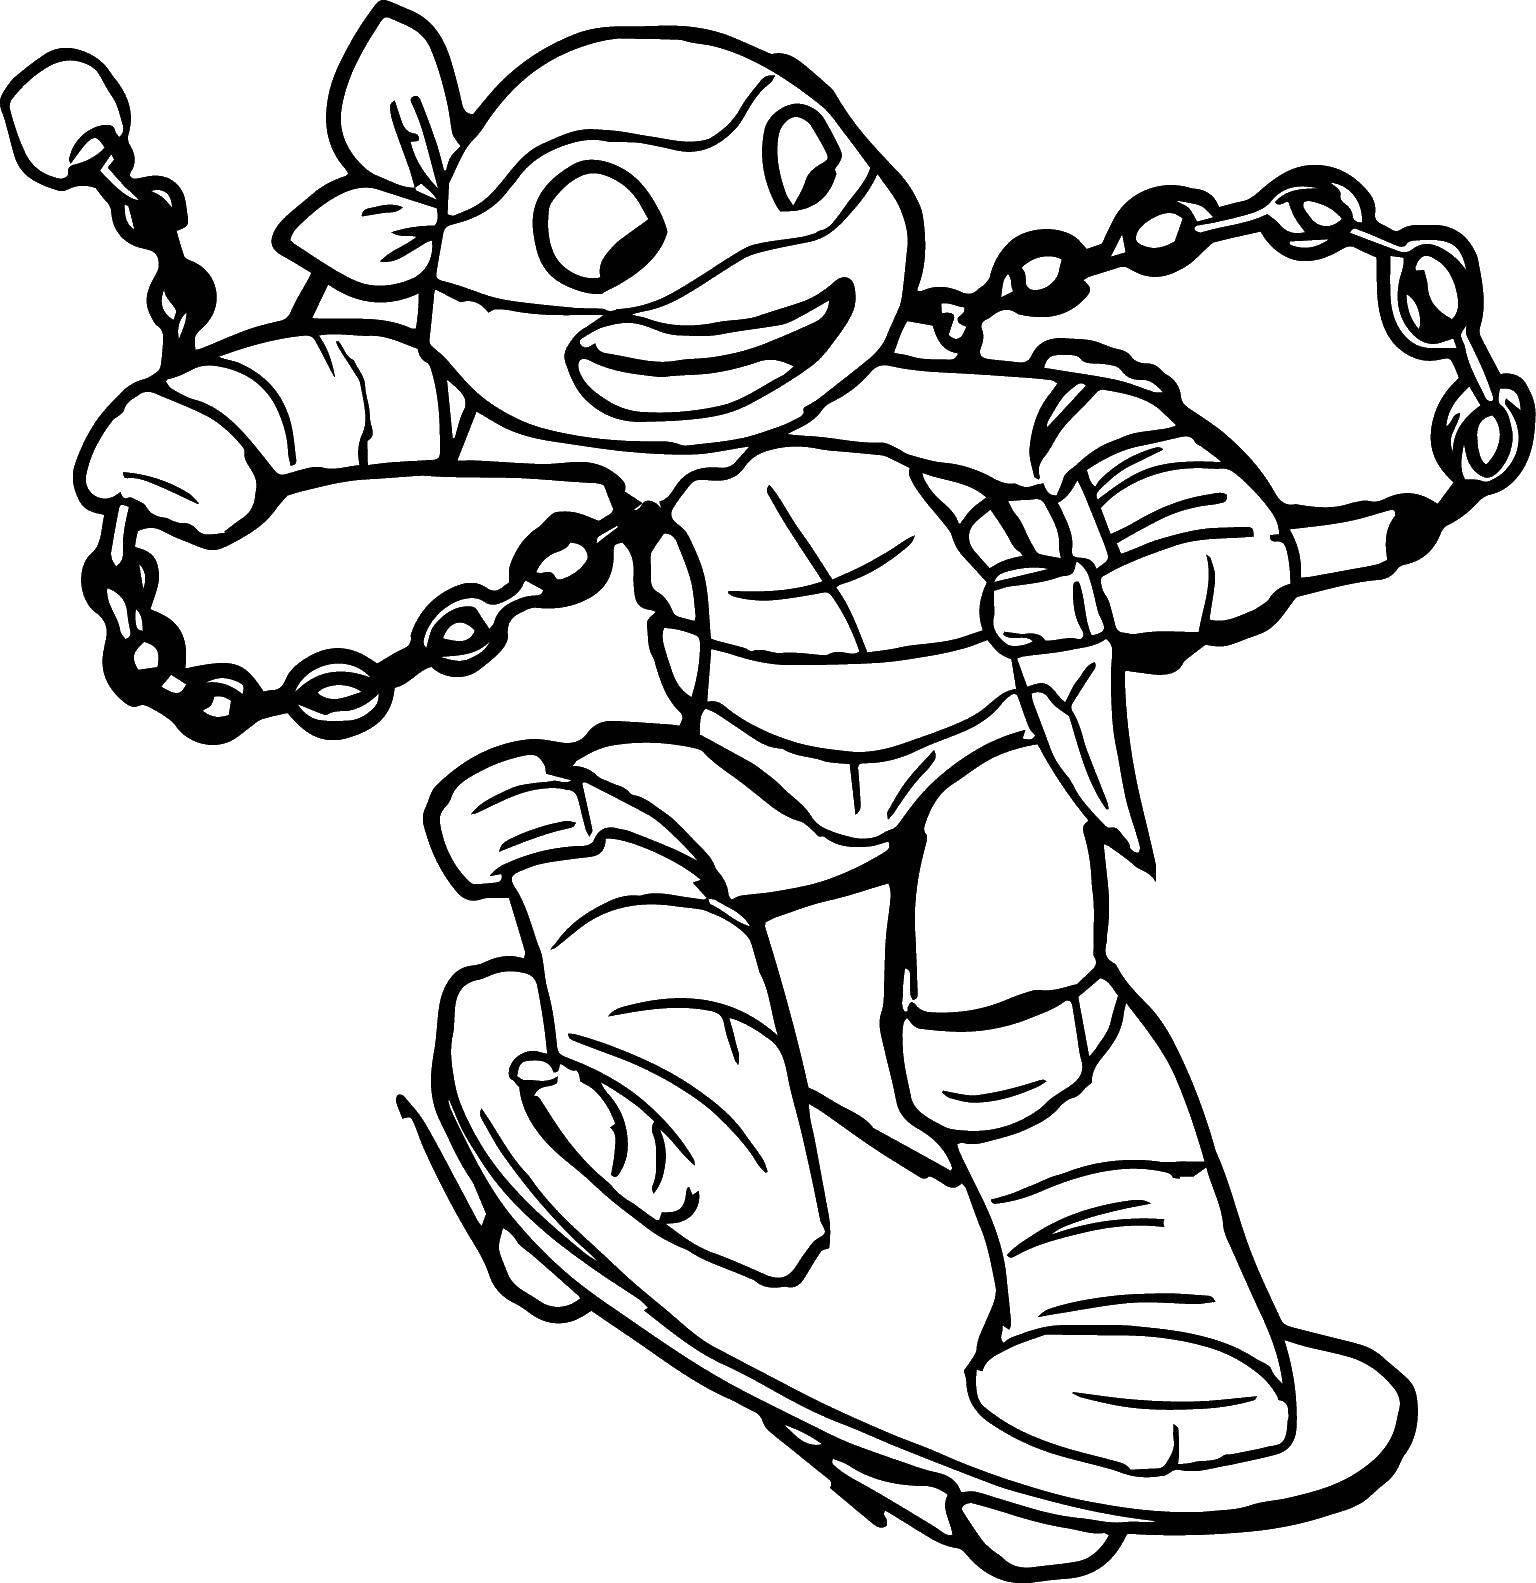 Coloring Ninja turtle on skateboard. Category teenage mutant ninja turtles. Tags:  turtles cartoon, teenage mutant ninja turtles.